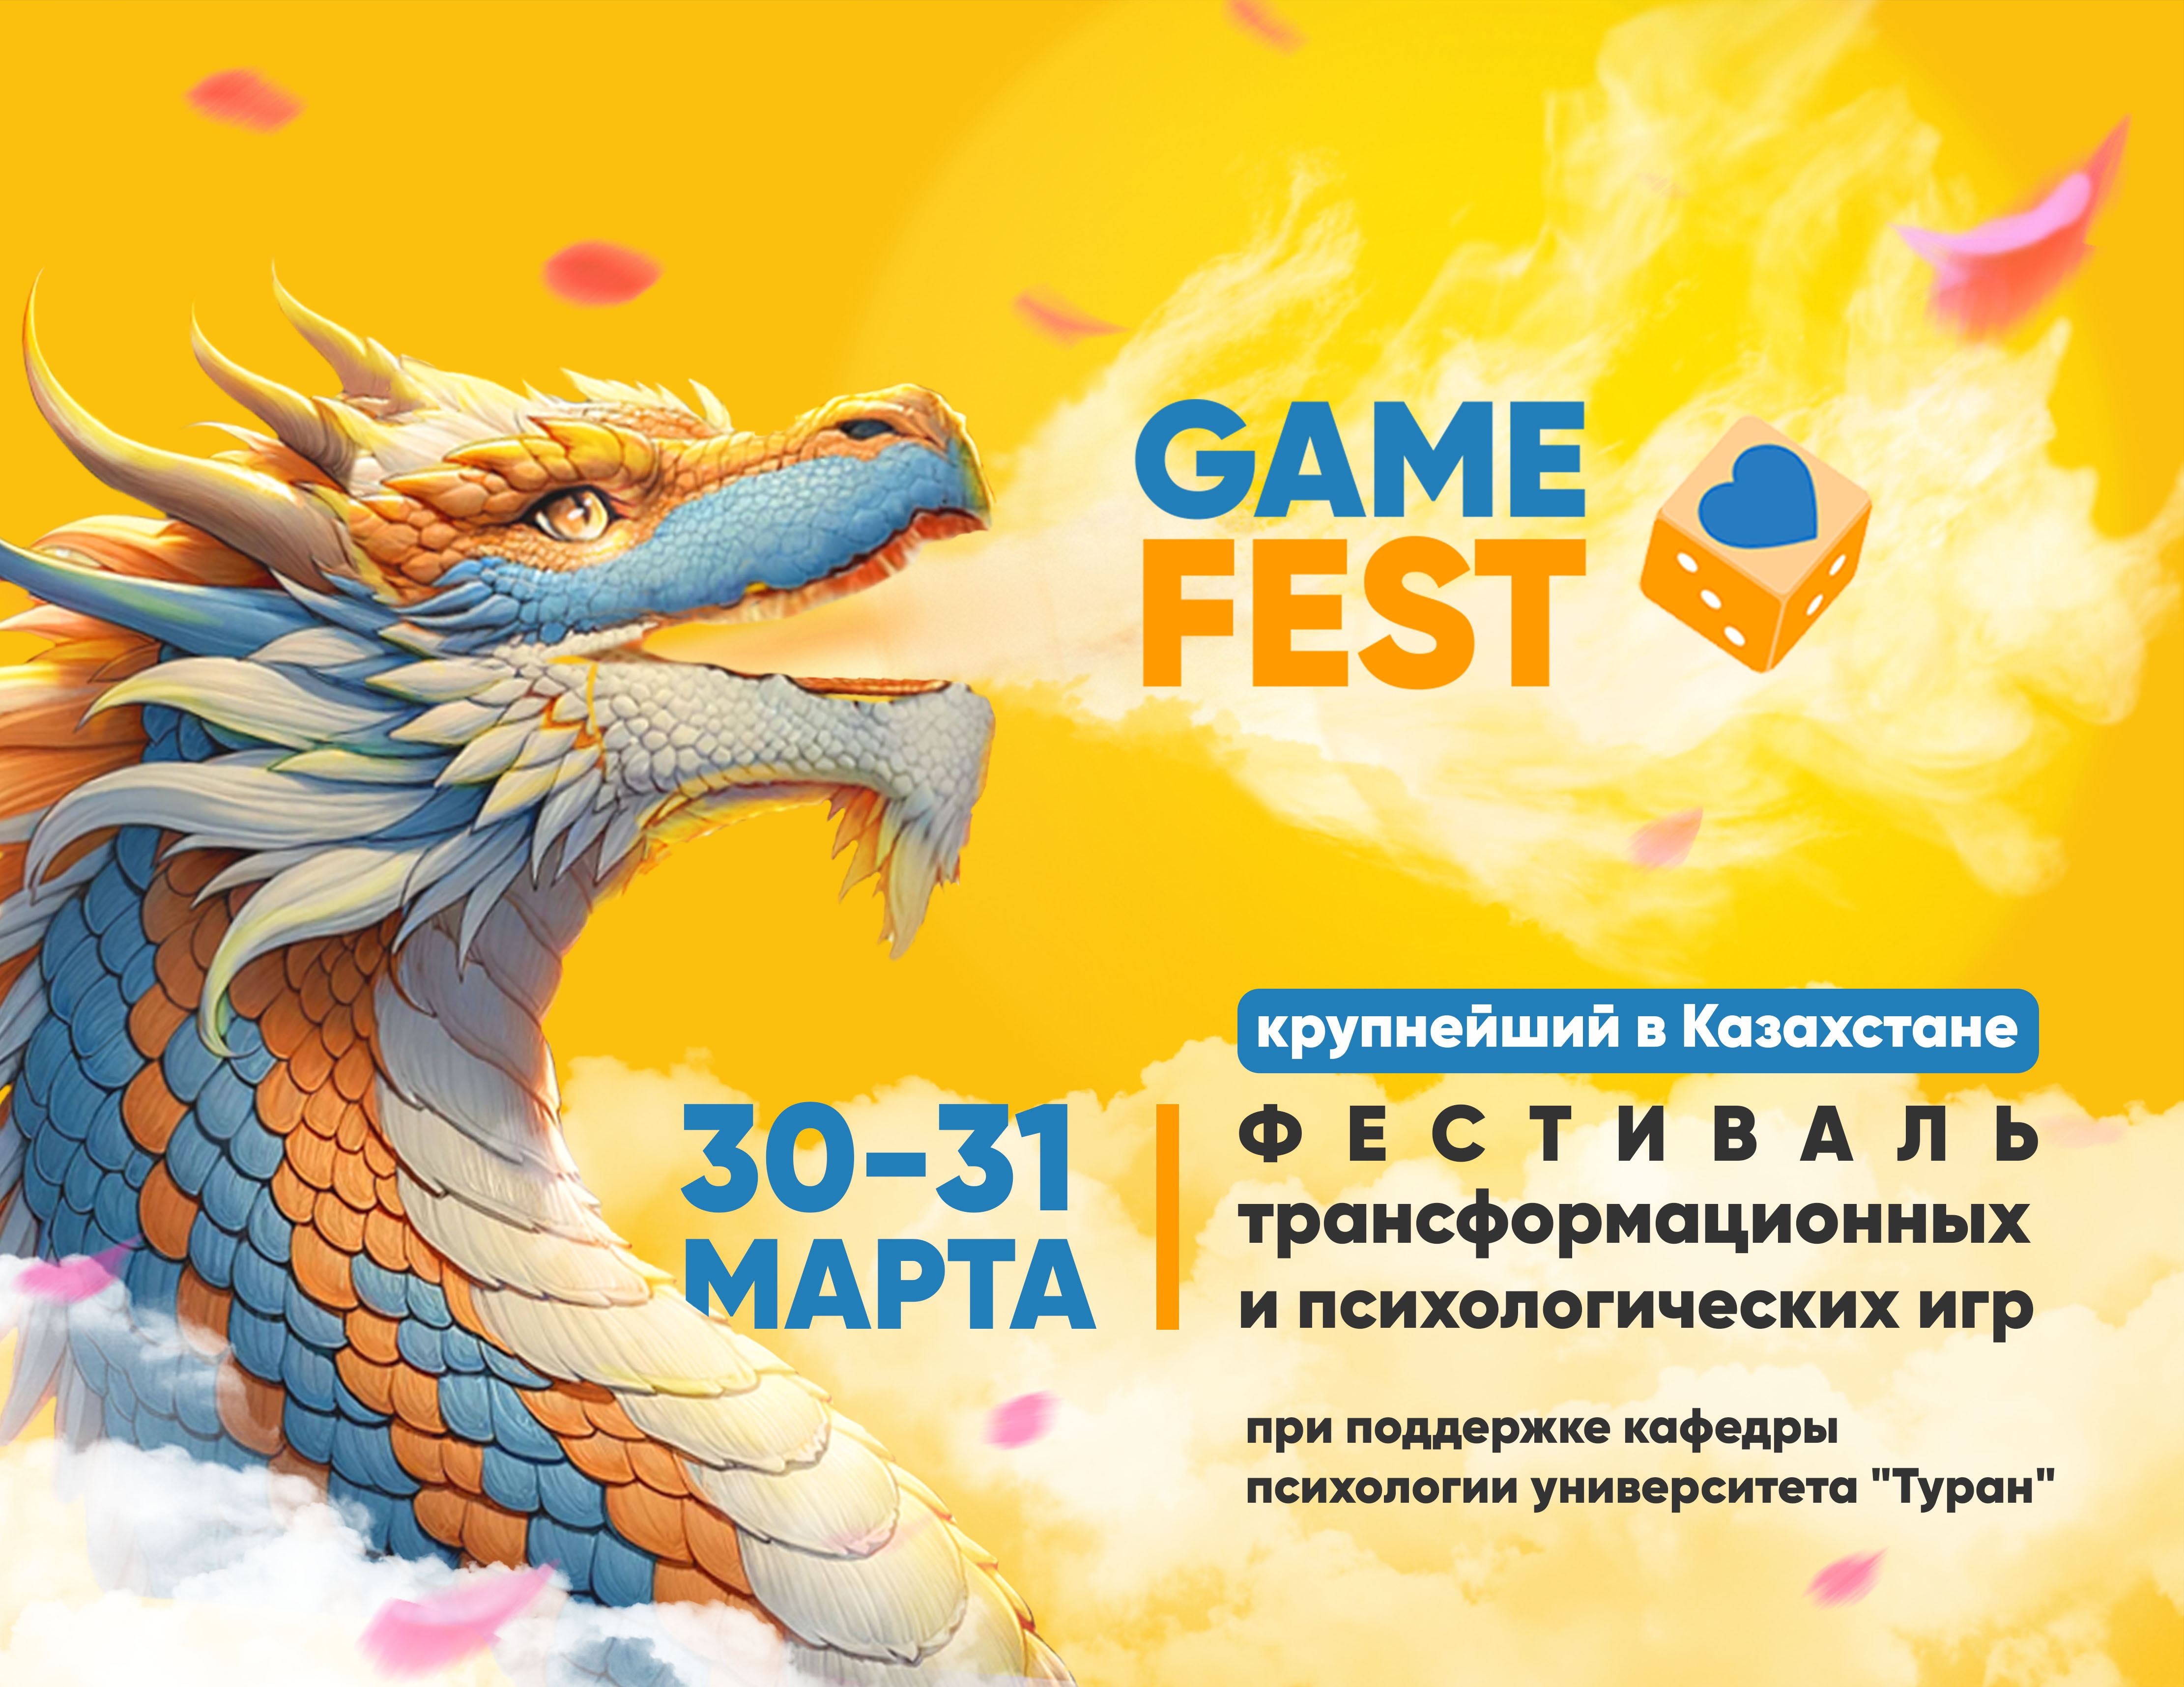 Методы современной психологии покажут в игровой форме на международном фестивале GameFest.